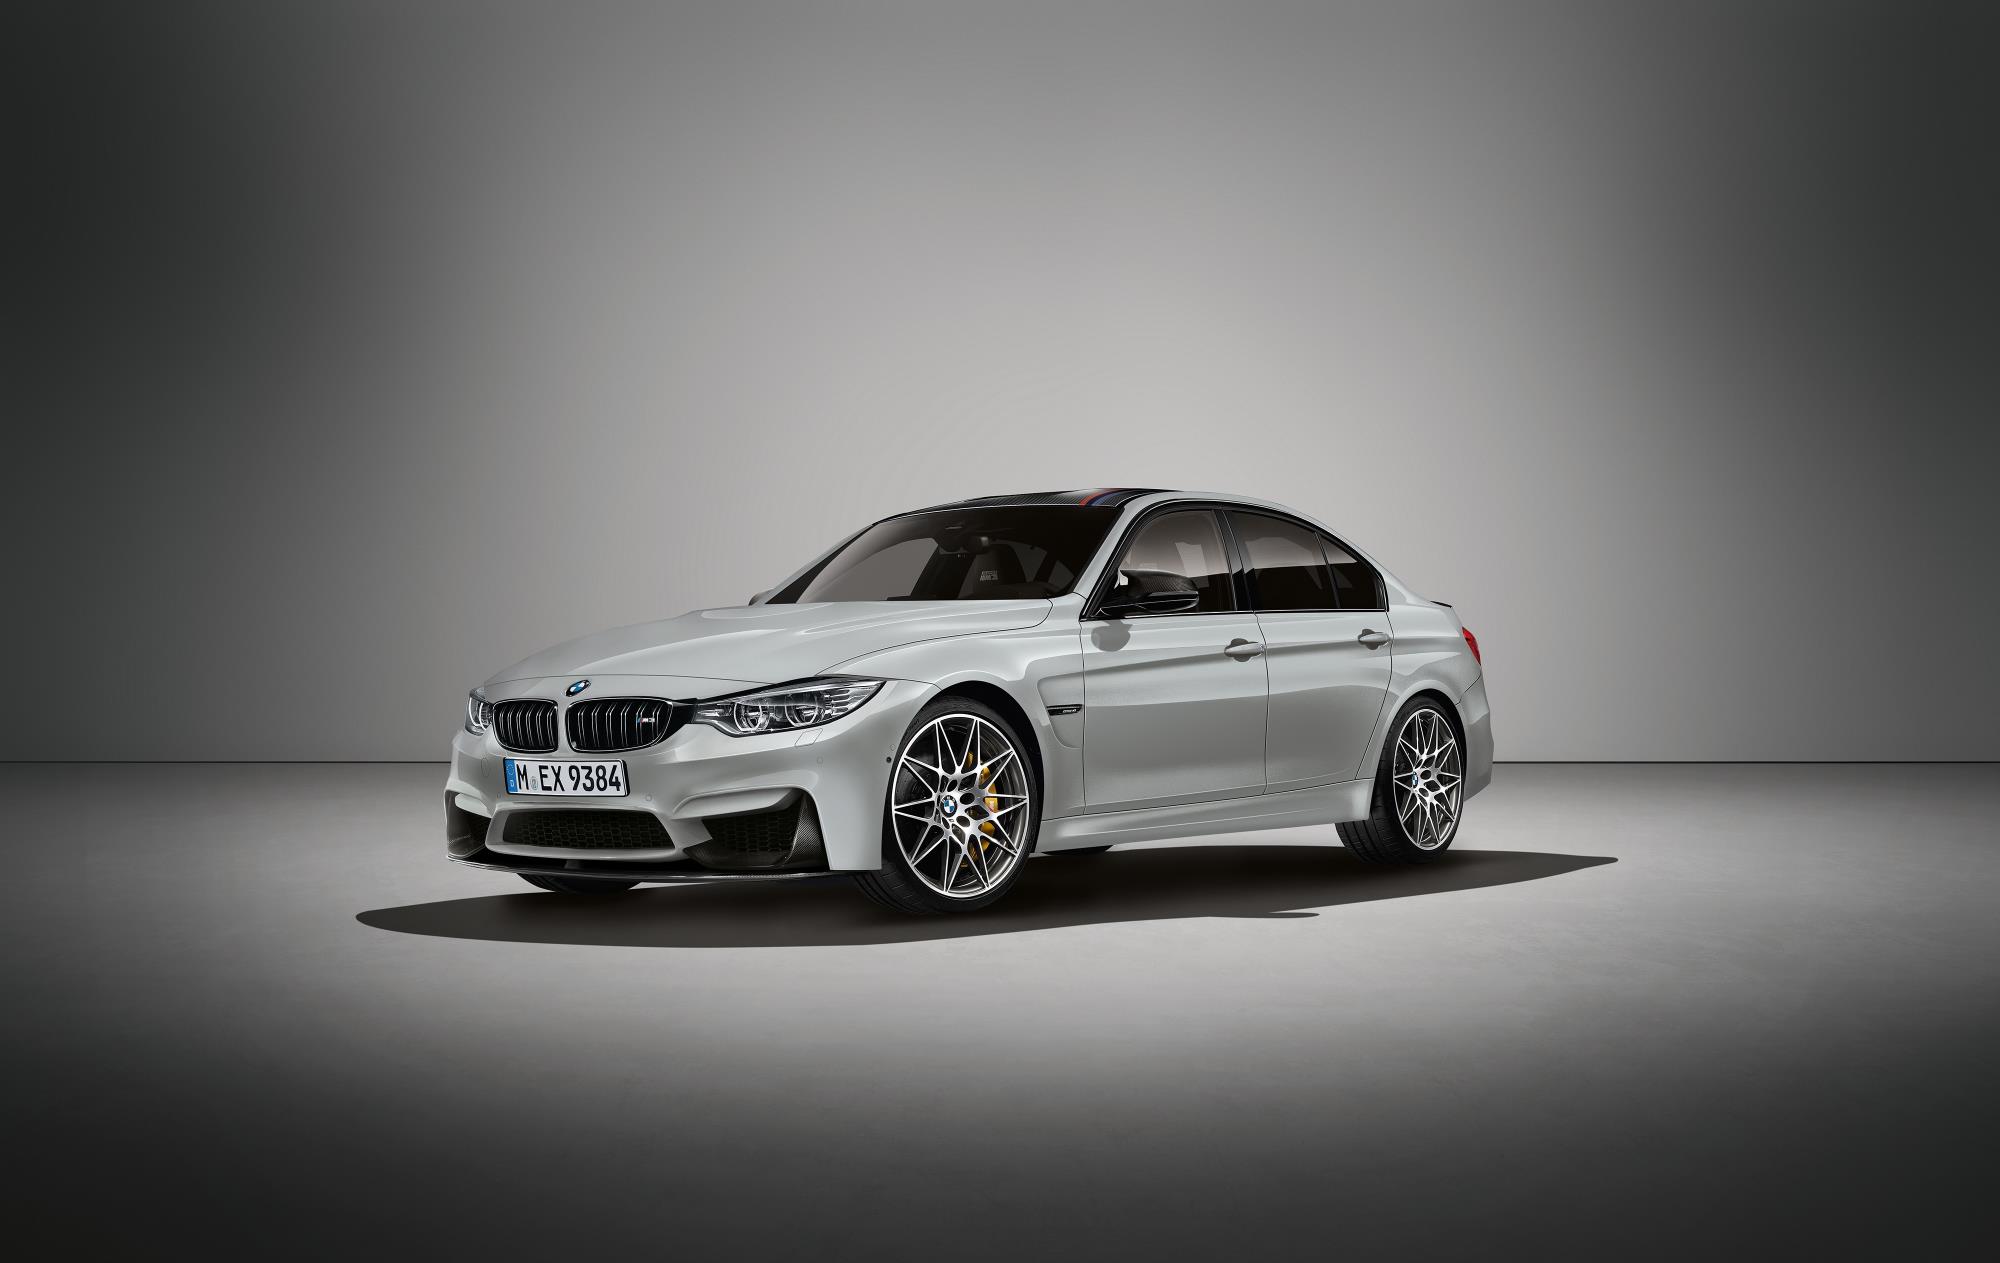 BMW выпустил специальное издание M3 в честь празднования 30-й годовщины M3 в качестве модели BMW. Метко названный BMW M3 30 Jahre Edition основан на стандартном M3 в пакете Competition. 30 Jahre Edition, однако, получает 444 лошадиных сил от его 3,0-